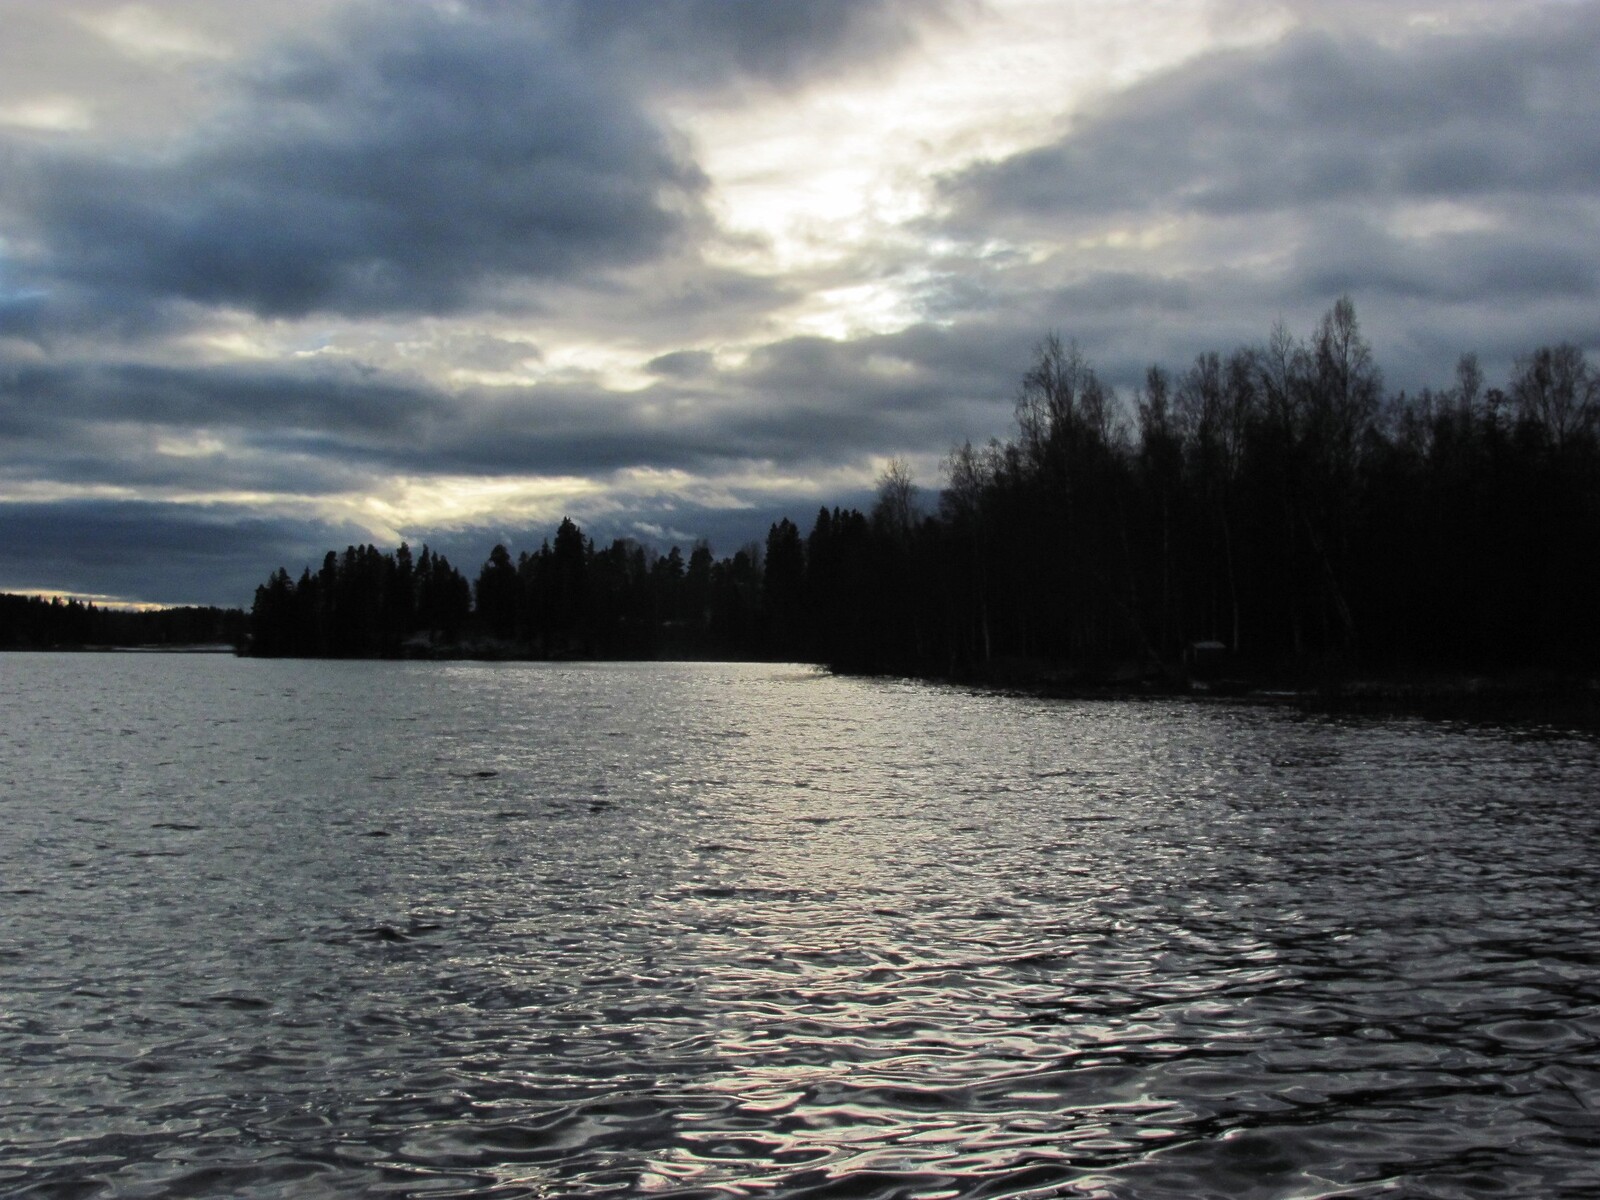  Kytäjärvi